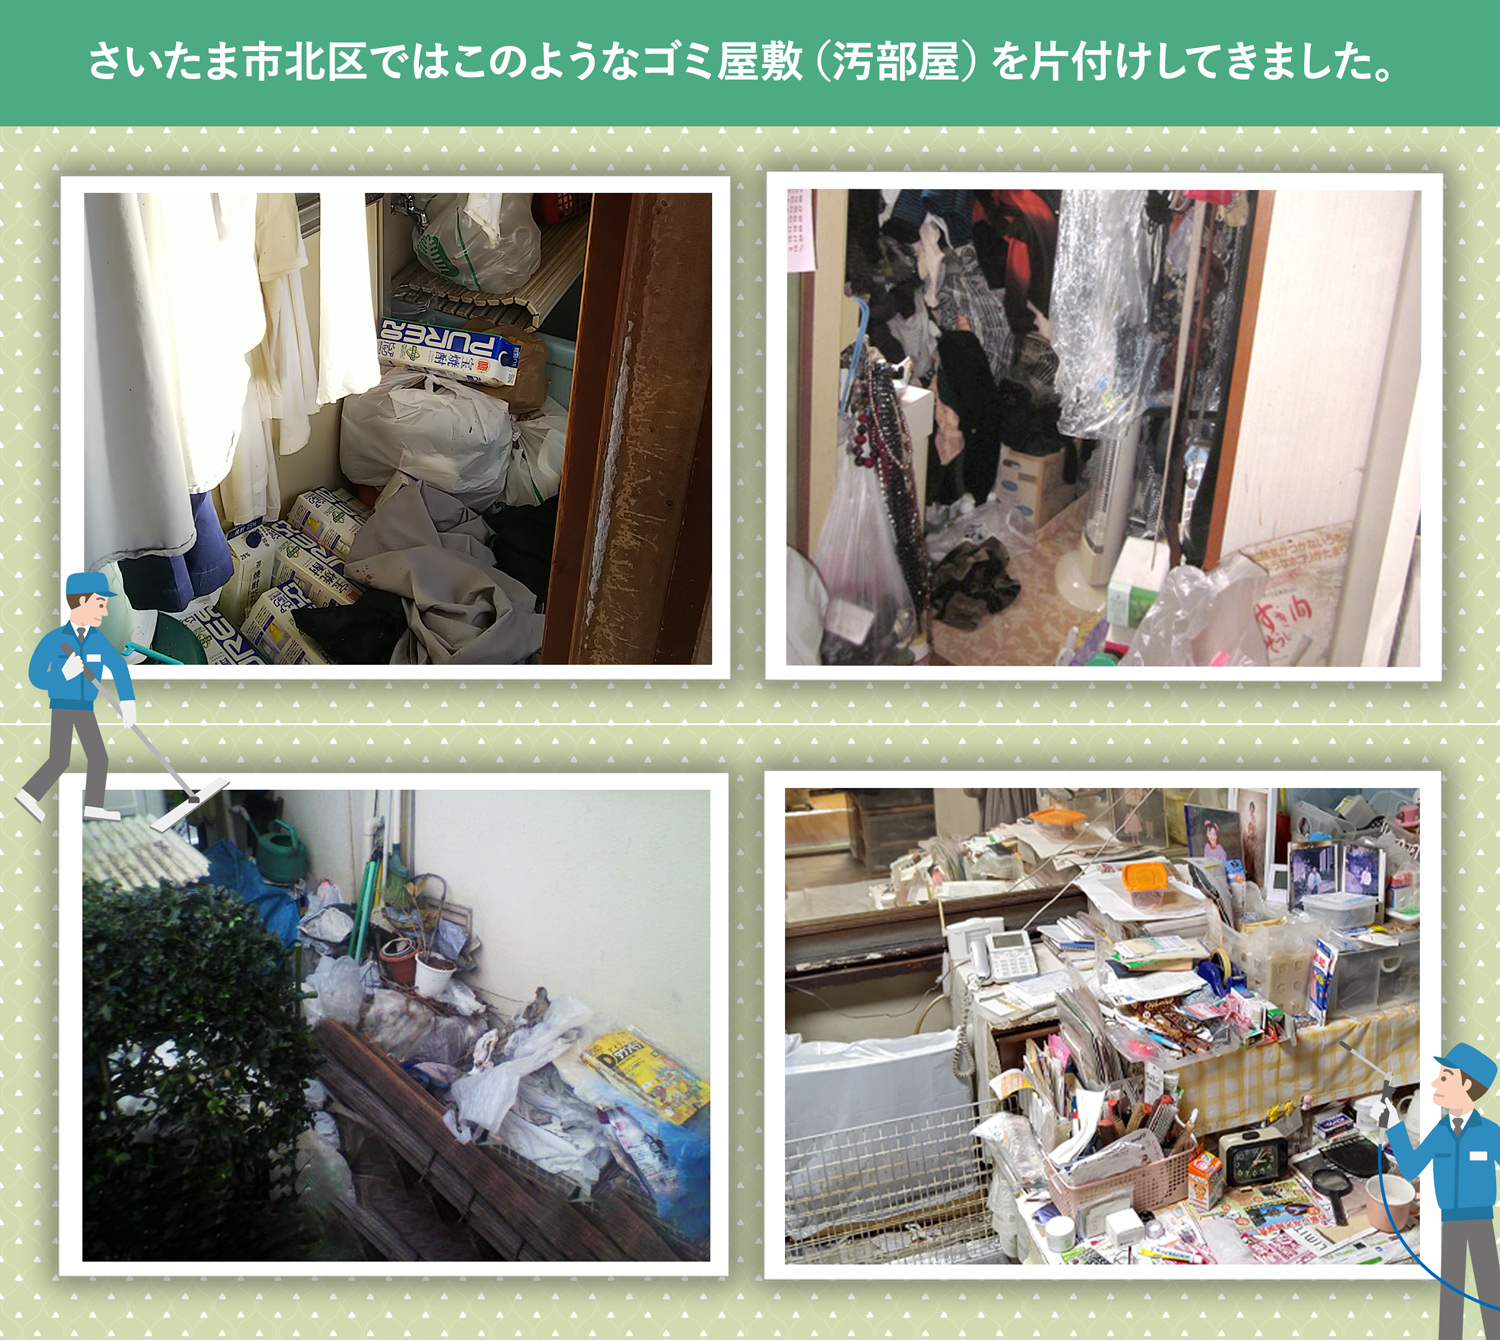 さいたま市北区で行ったで行ったごみ屋敷・汚部屋の片付けの一例